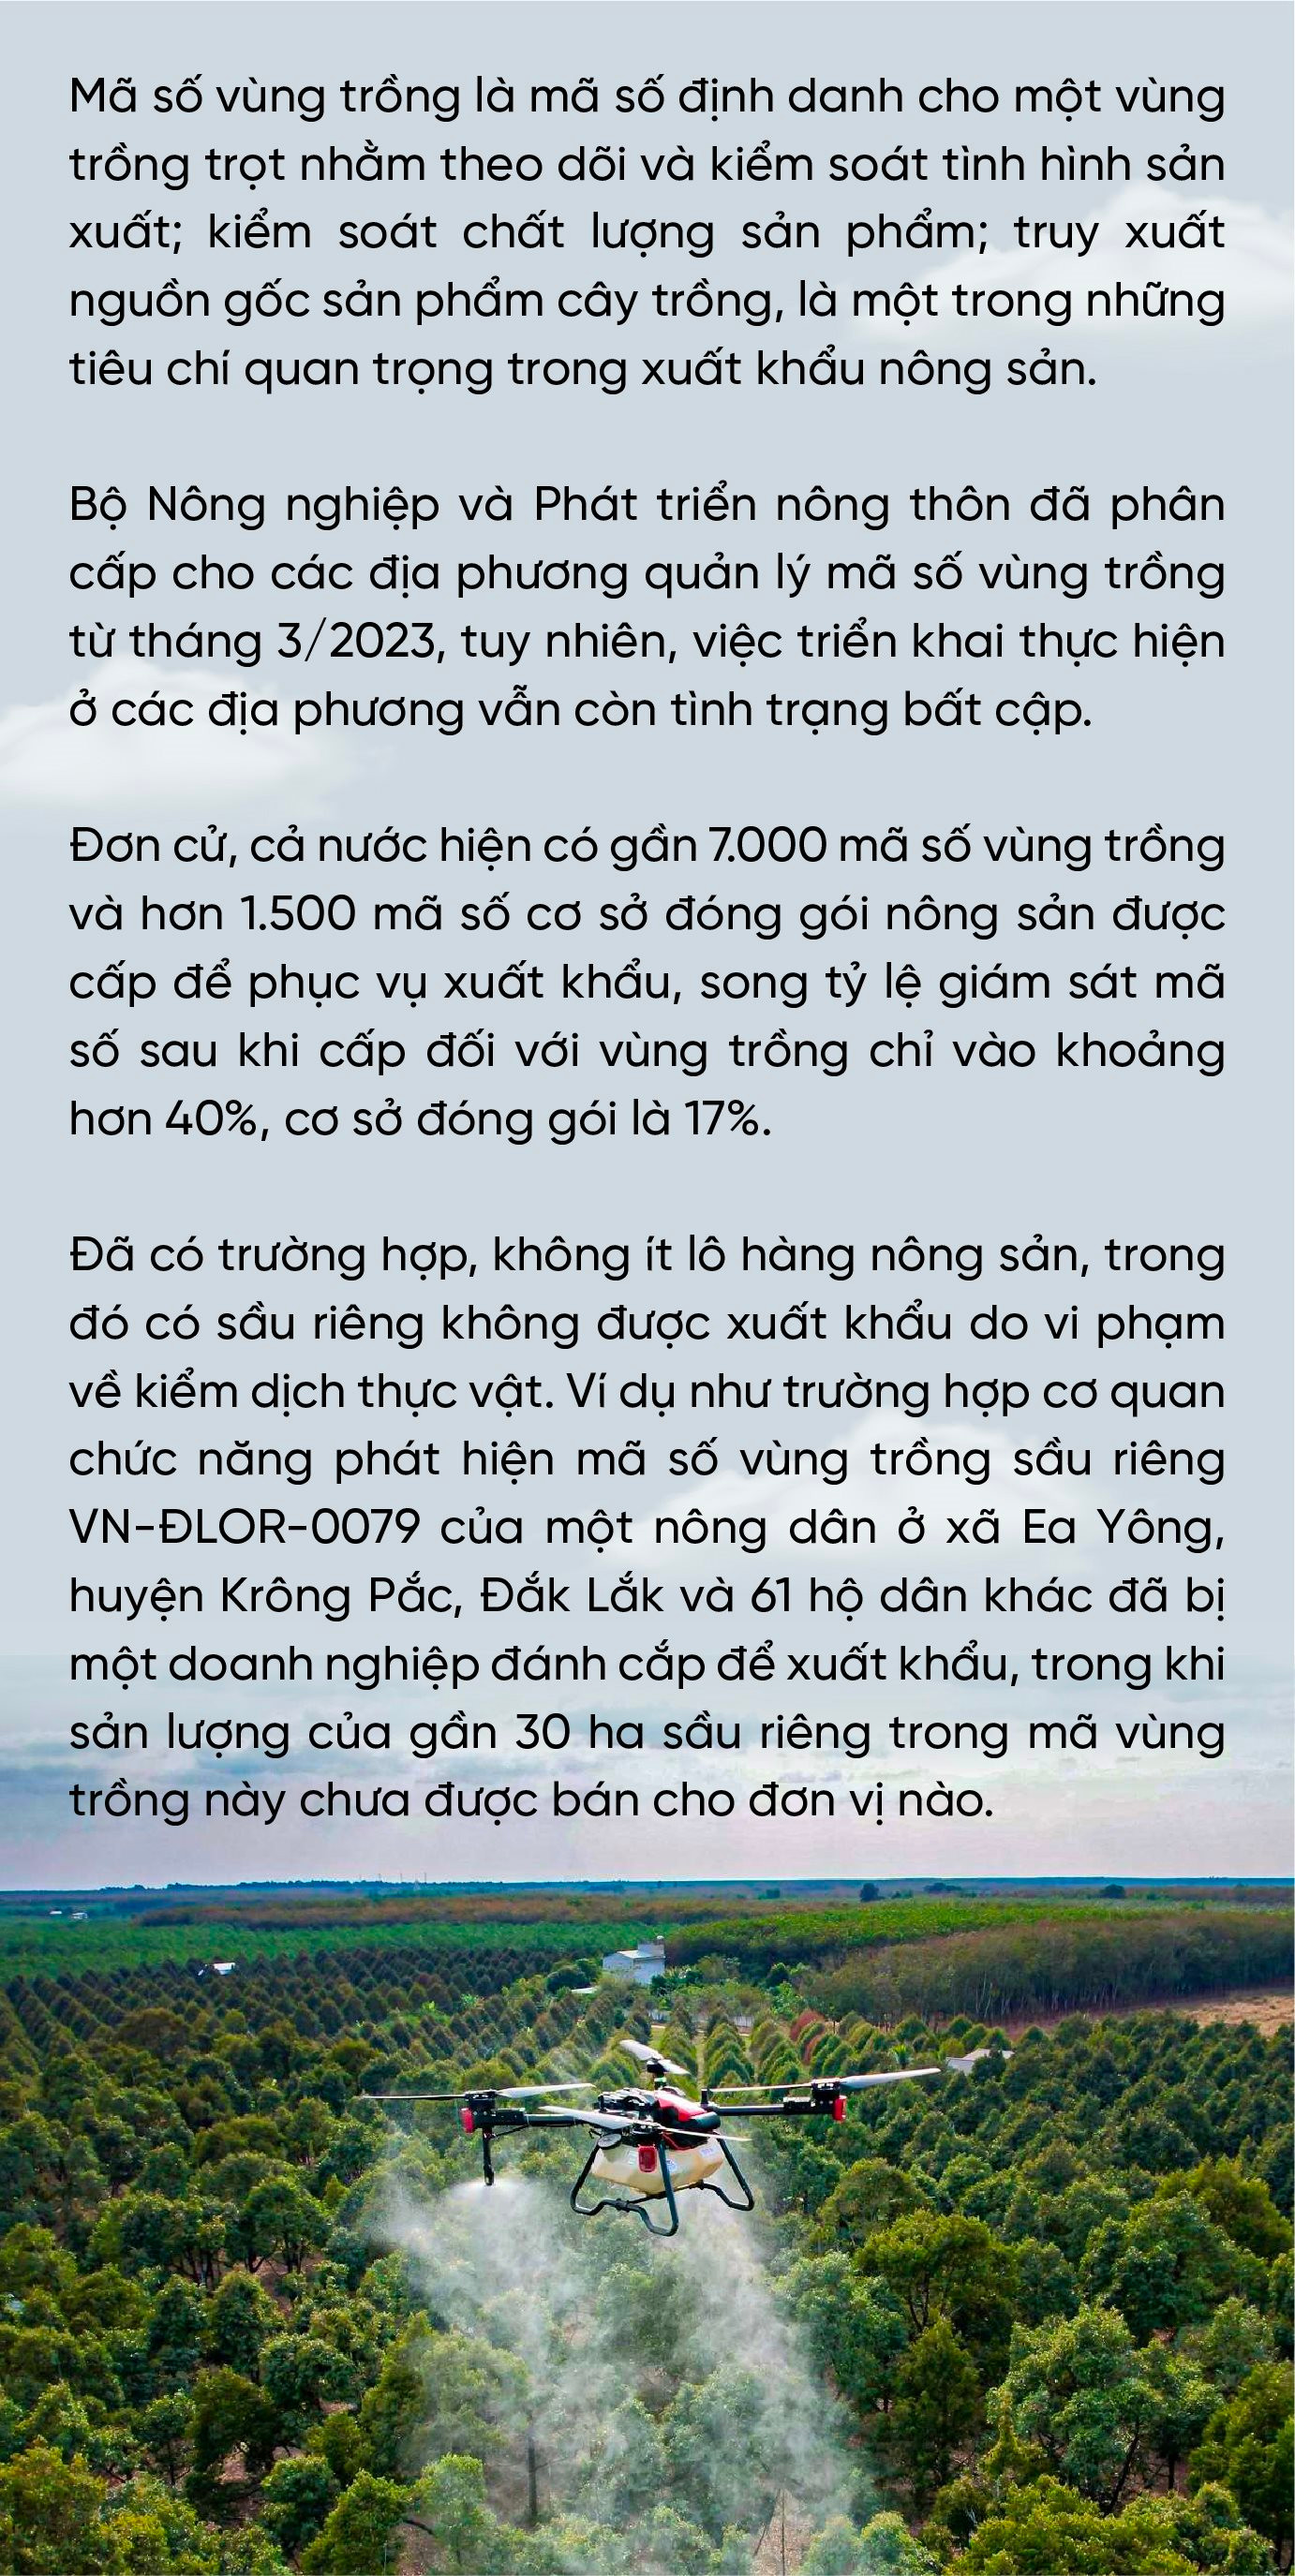 Doanh nhân Nguyễn Thị Thành Thực: Người Hàn Quốc sang Việt Nam làm chủ lĩnh vực công nghiệp, thì người Việt Nam cũng có thể làm chủ trong nông nghiệp ở Hàn Quốc- Ảnh 2.